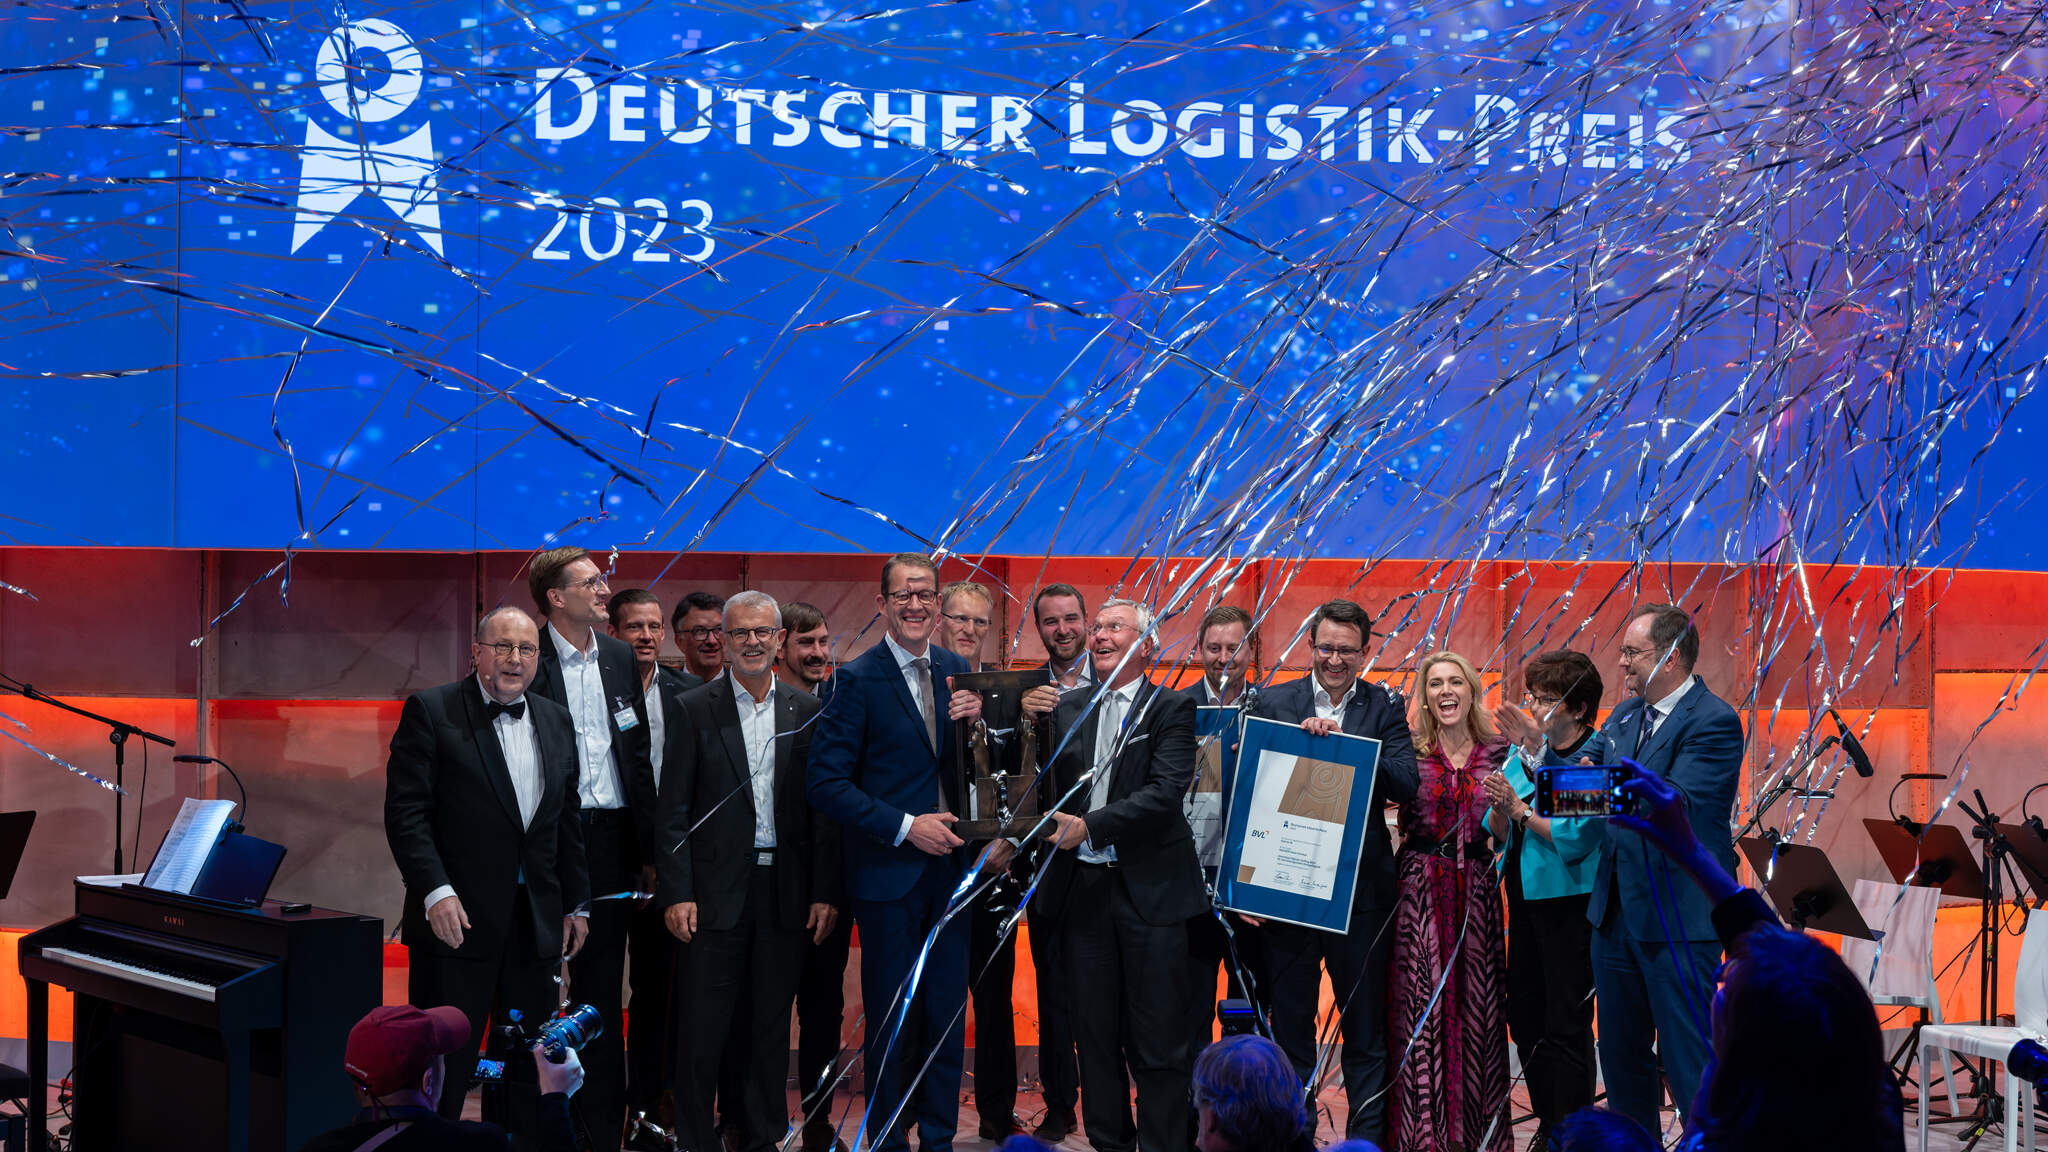 Burkhard Eling, CEO DACHSER și Prof. Dr. Dr. h.c.. Michael ten Hompel, Executive Director la Fraunhofer, acceptând premiul pentru Logistică Germană împreună cu echipele. Imagine: BVL/Bublitz